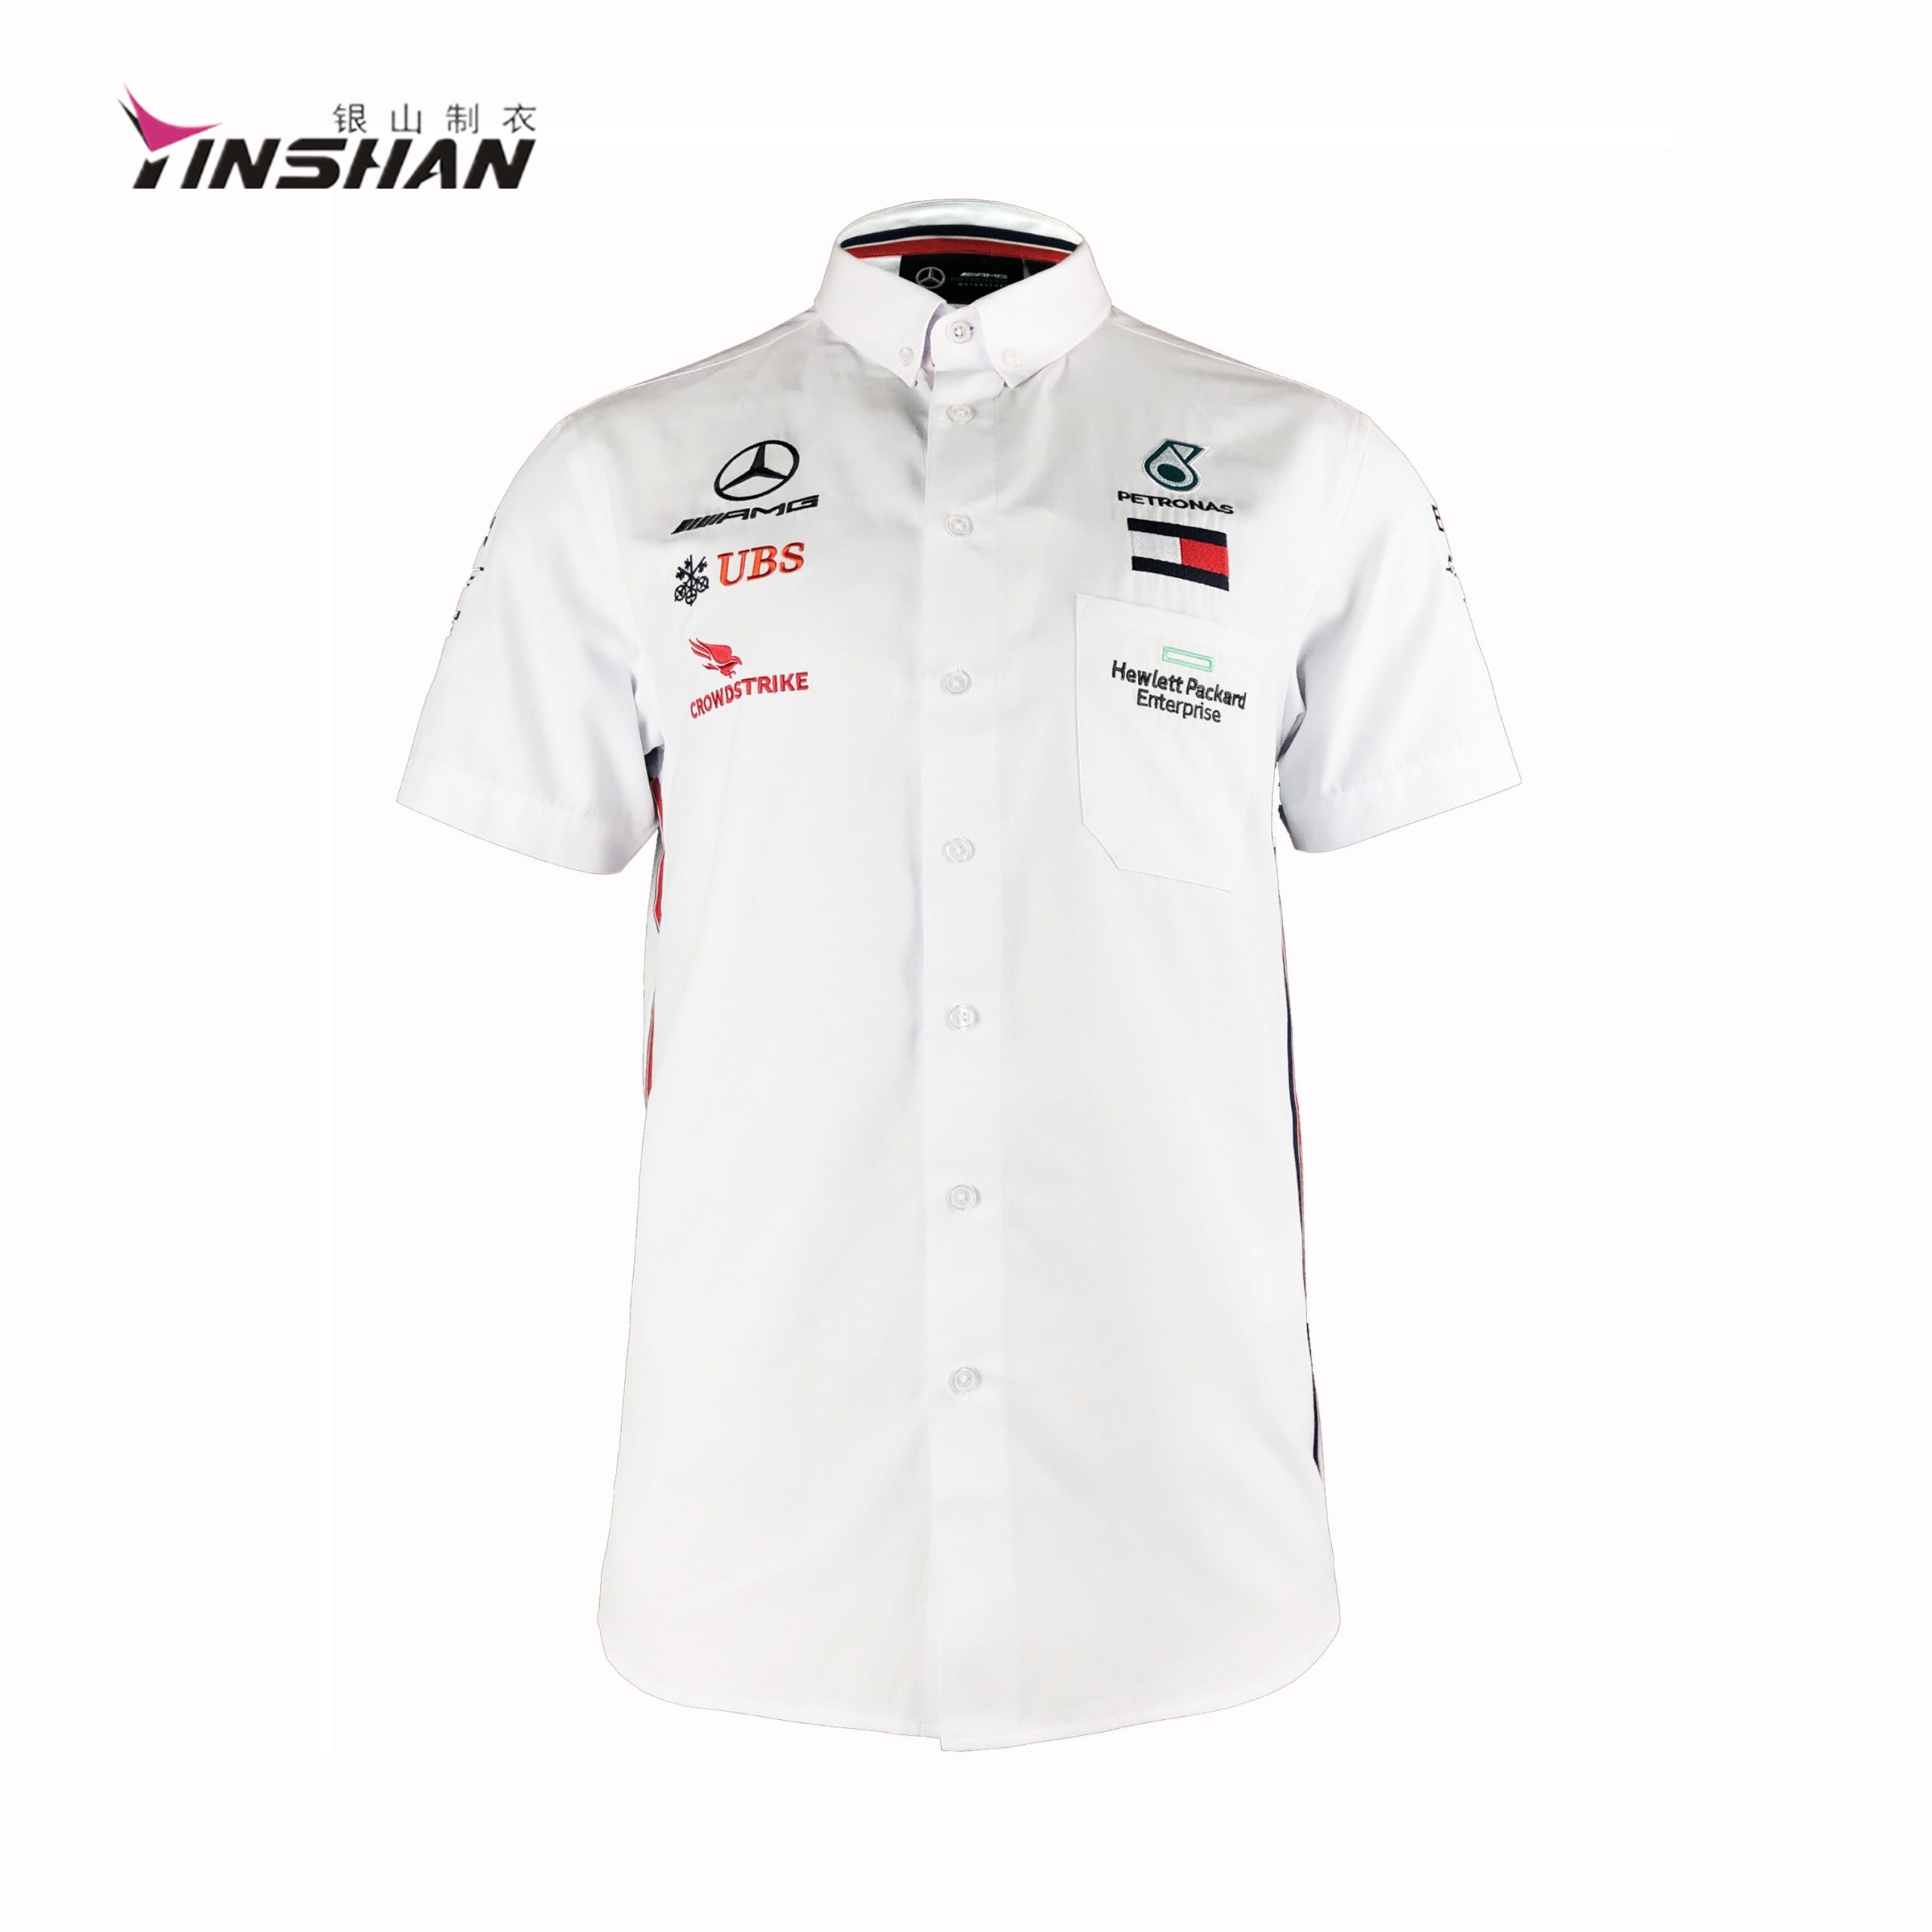 Mercedes-Benz Team Uniforms Shirt